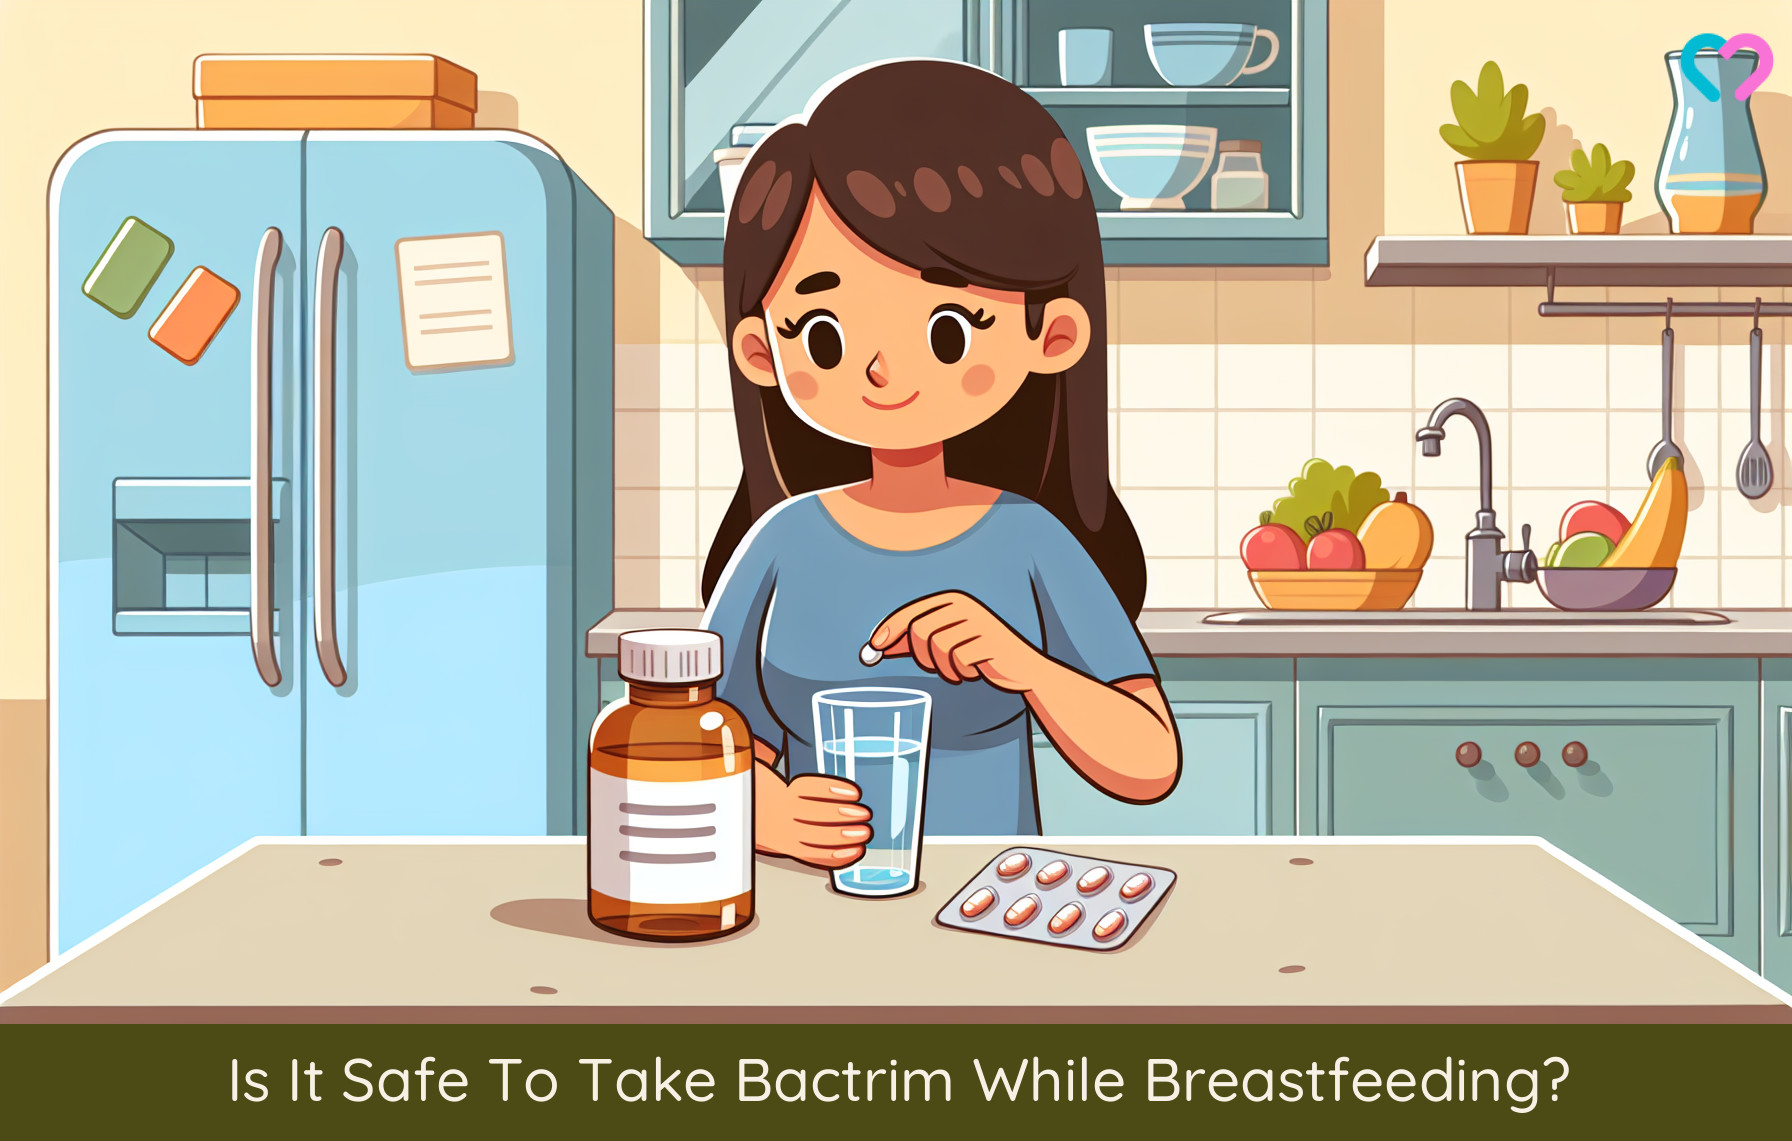 Bactrim while breastfeeding_illustration